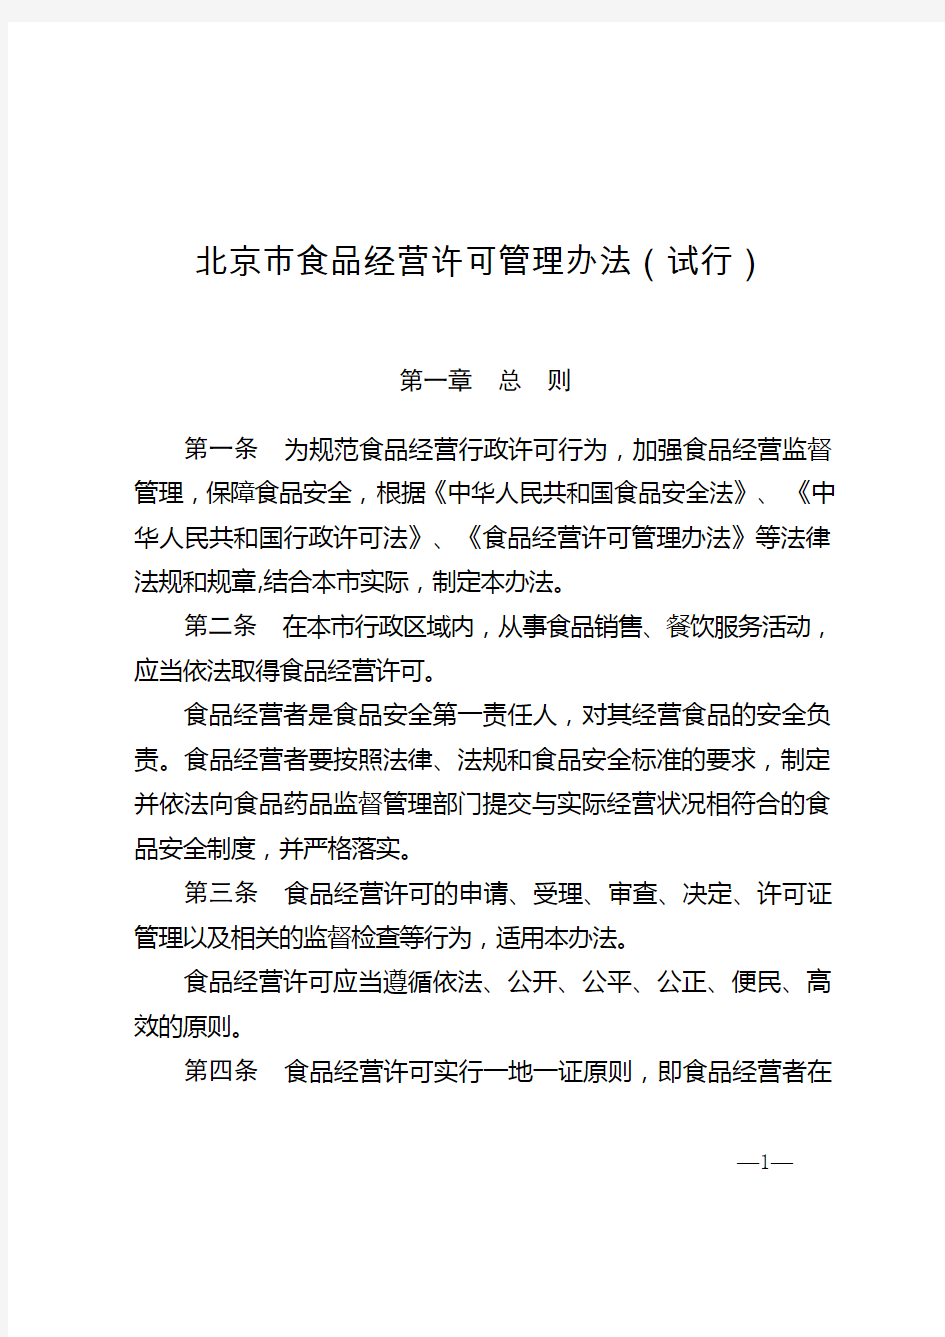 北京市食品经营许可管理办法(试行)